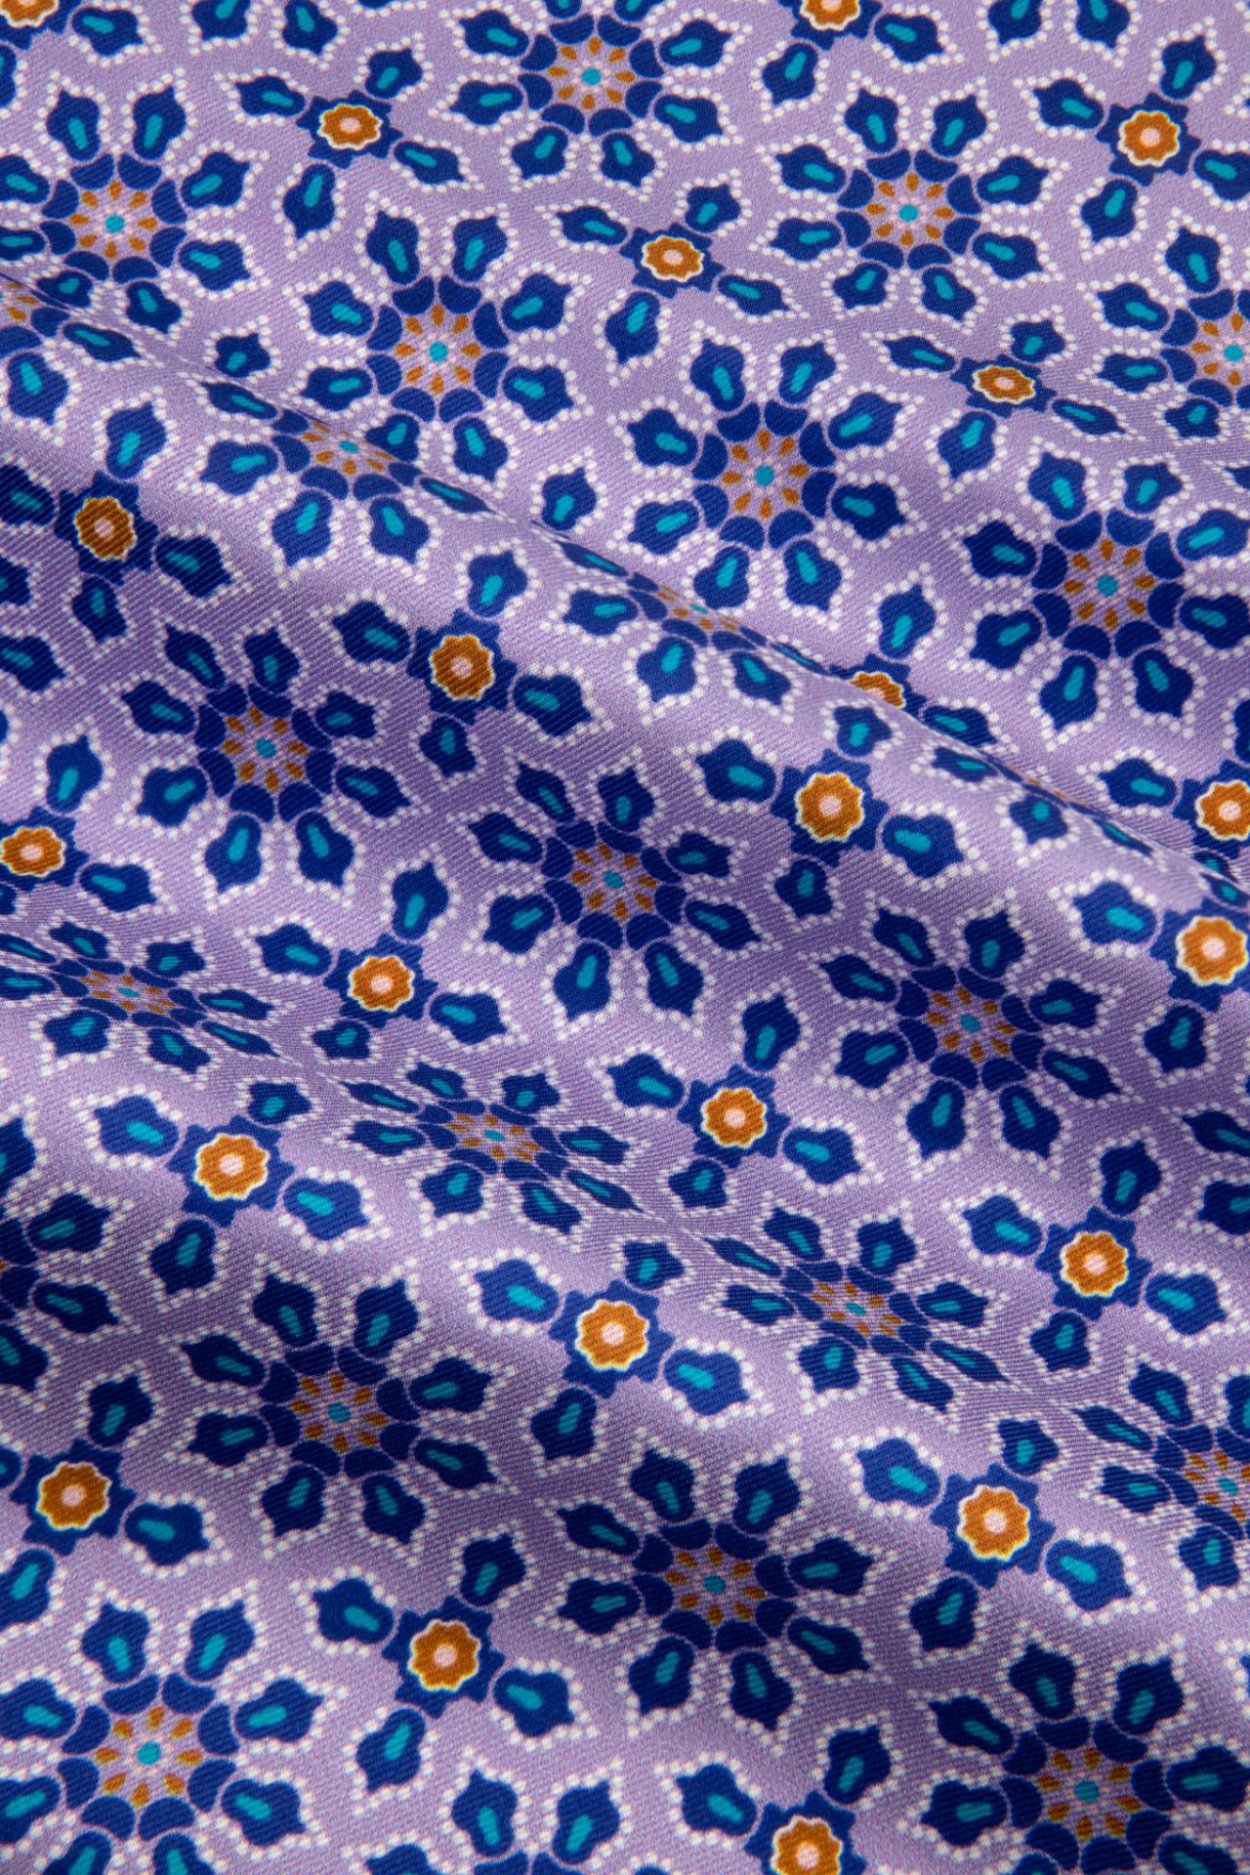 Fialový hedvábný kapesníček se vzorem